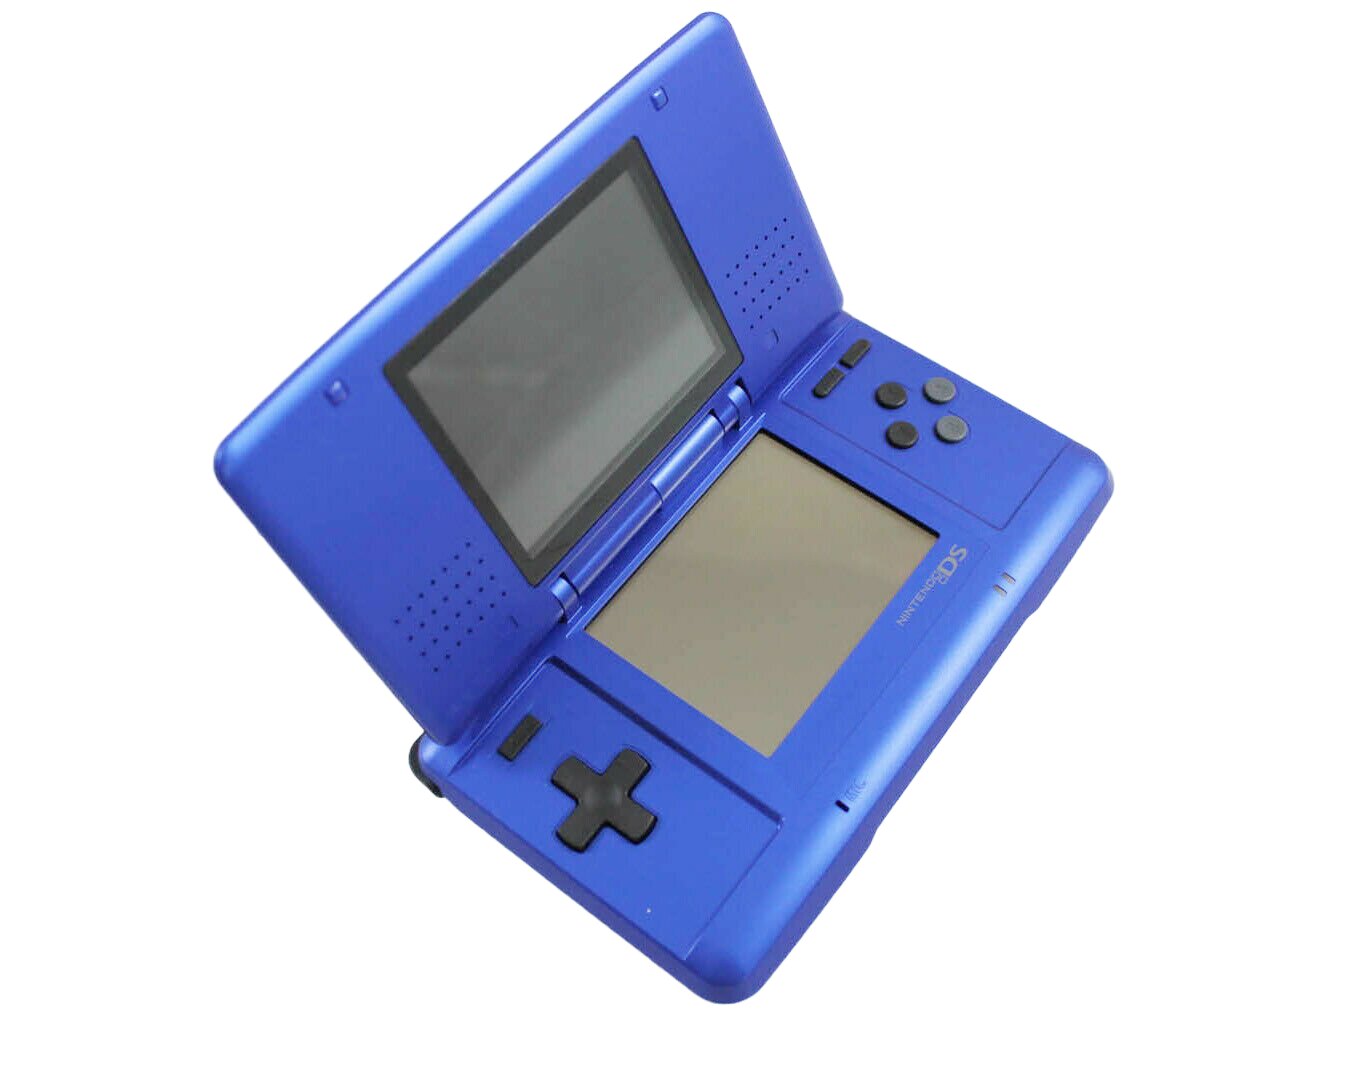 Nintendo DS Original - Electric Blue